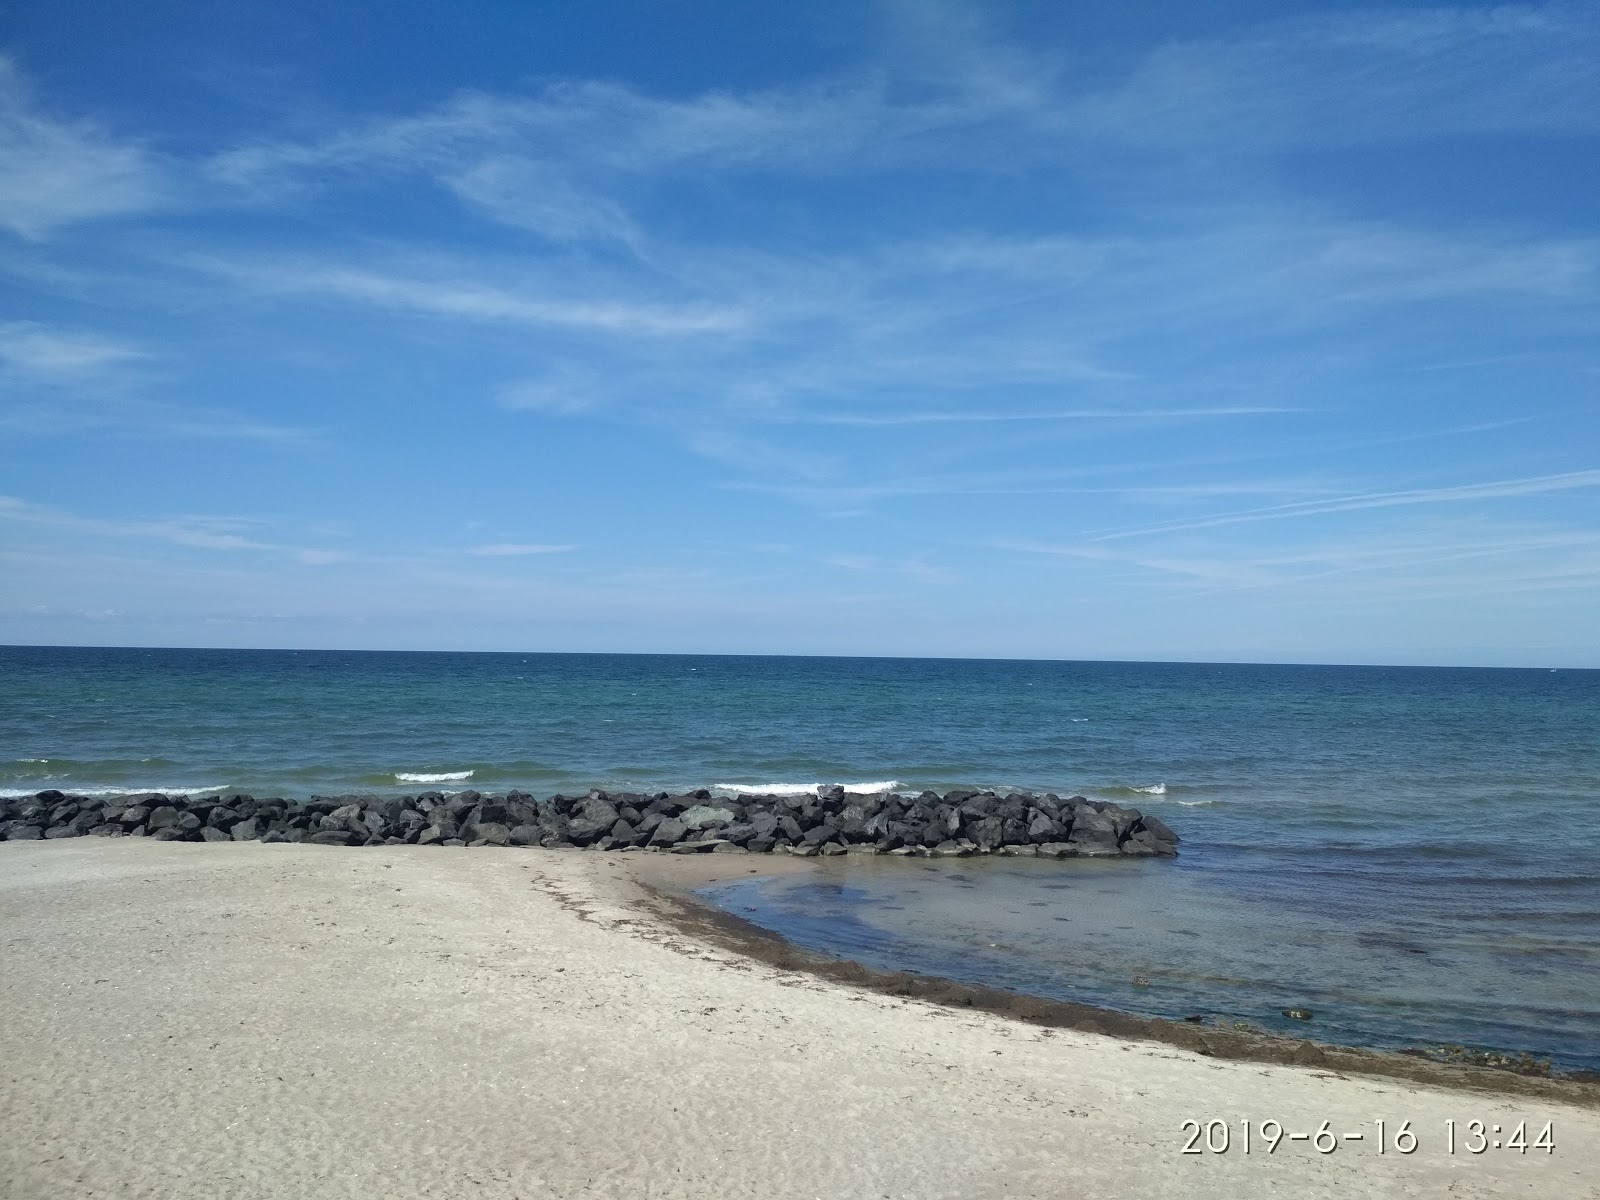 Fotografie cu Galgebjerg Beach - locul popular printre cunoscătorii de relaxare